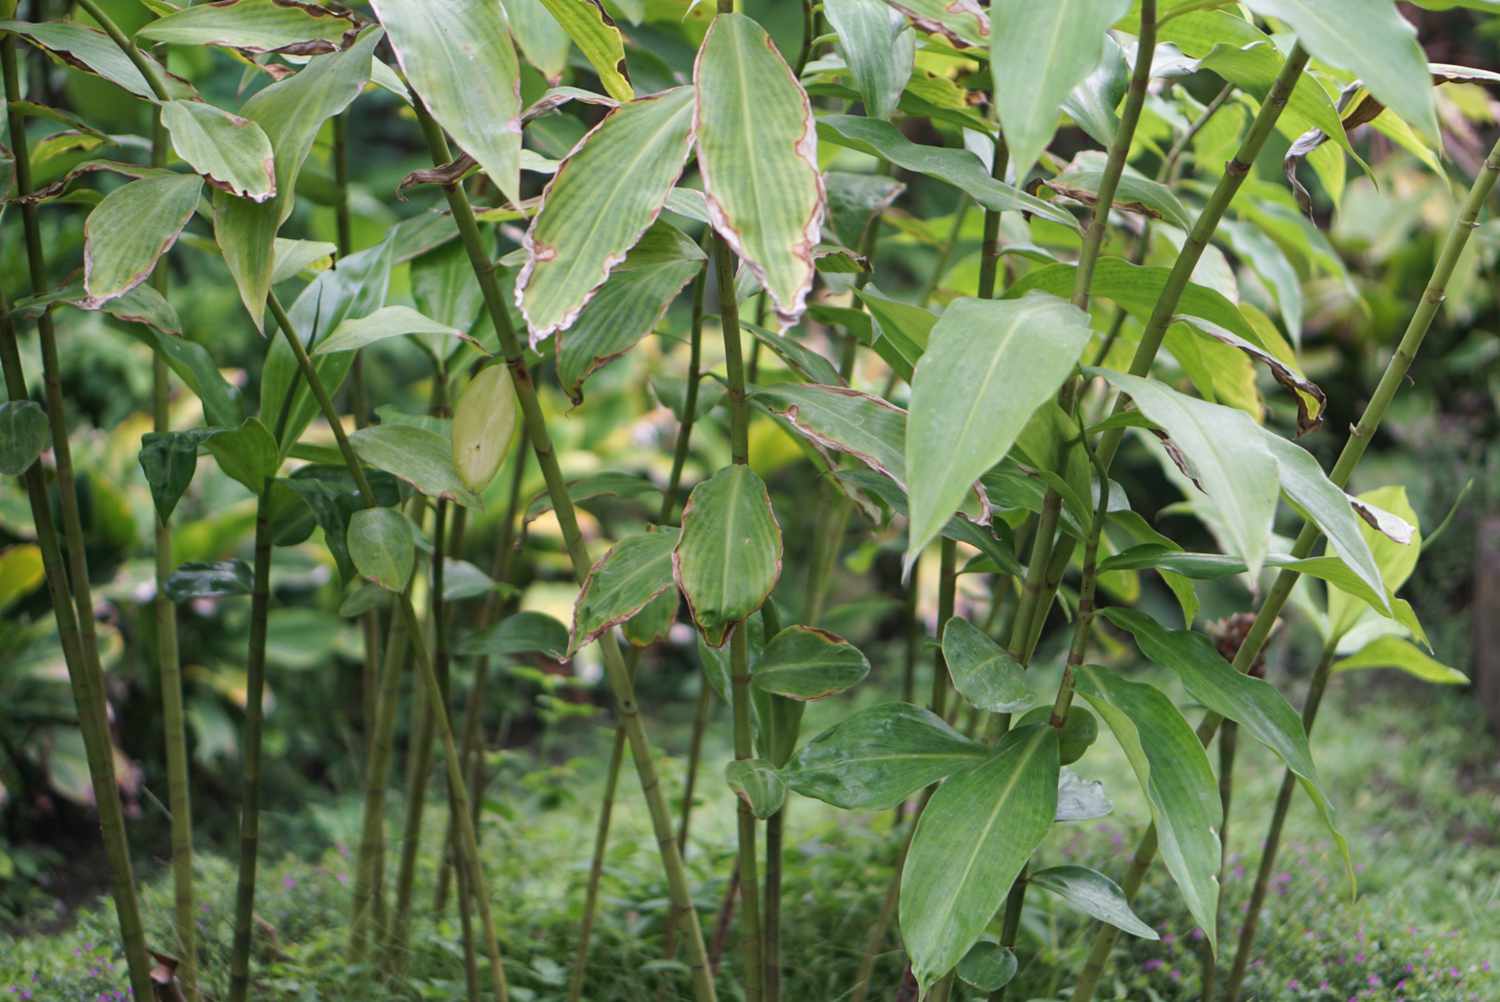 Ingwerpflanze mit dünnen grünen Stängeln und großen hängenden Blättern